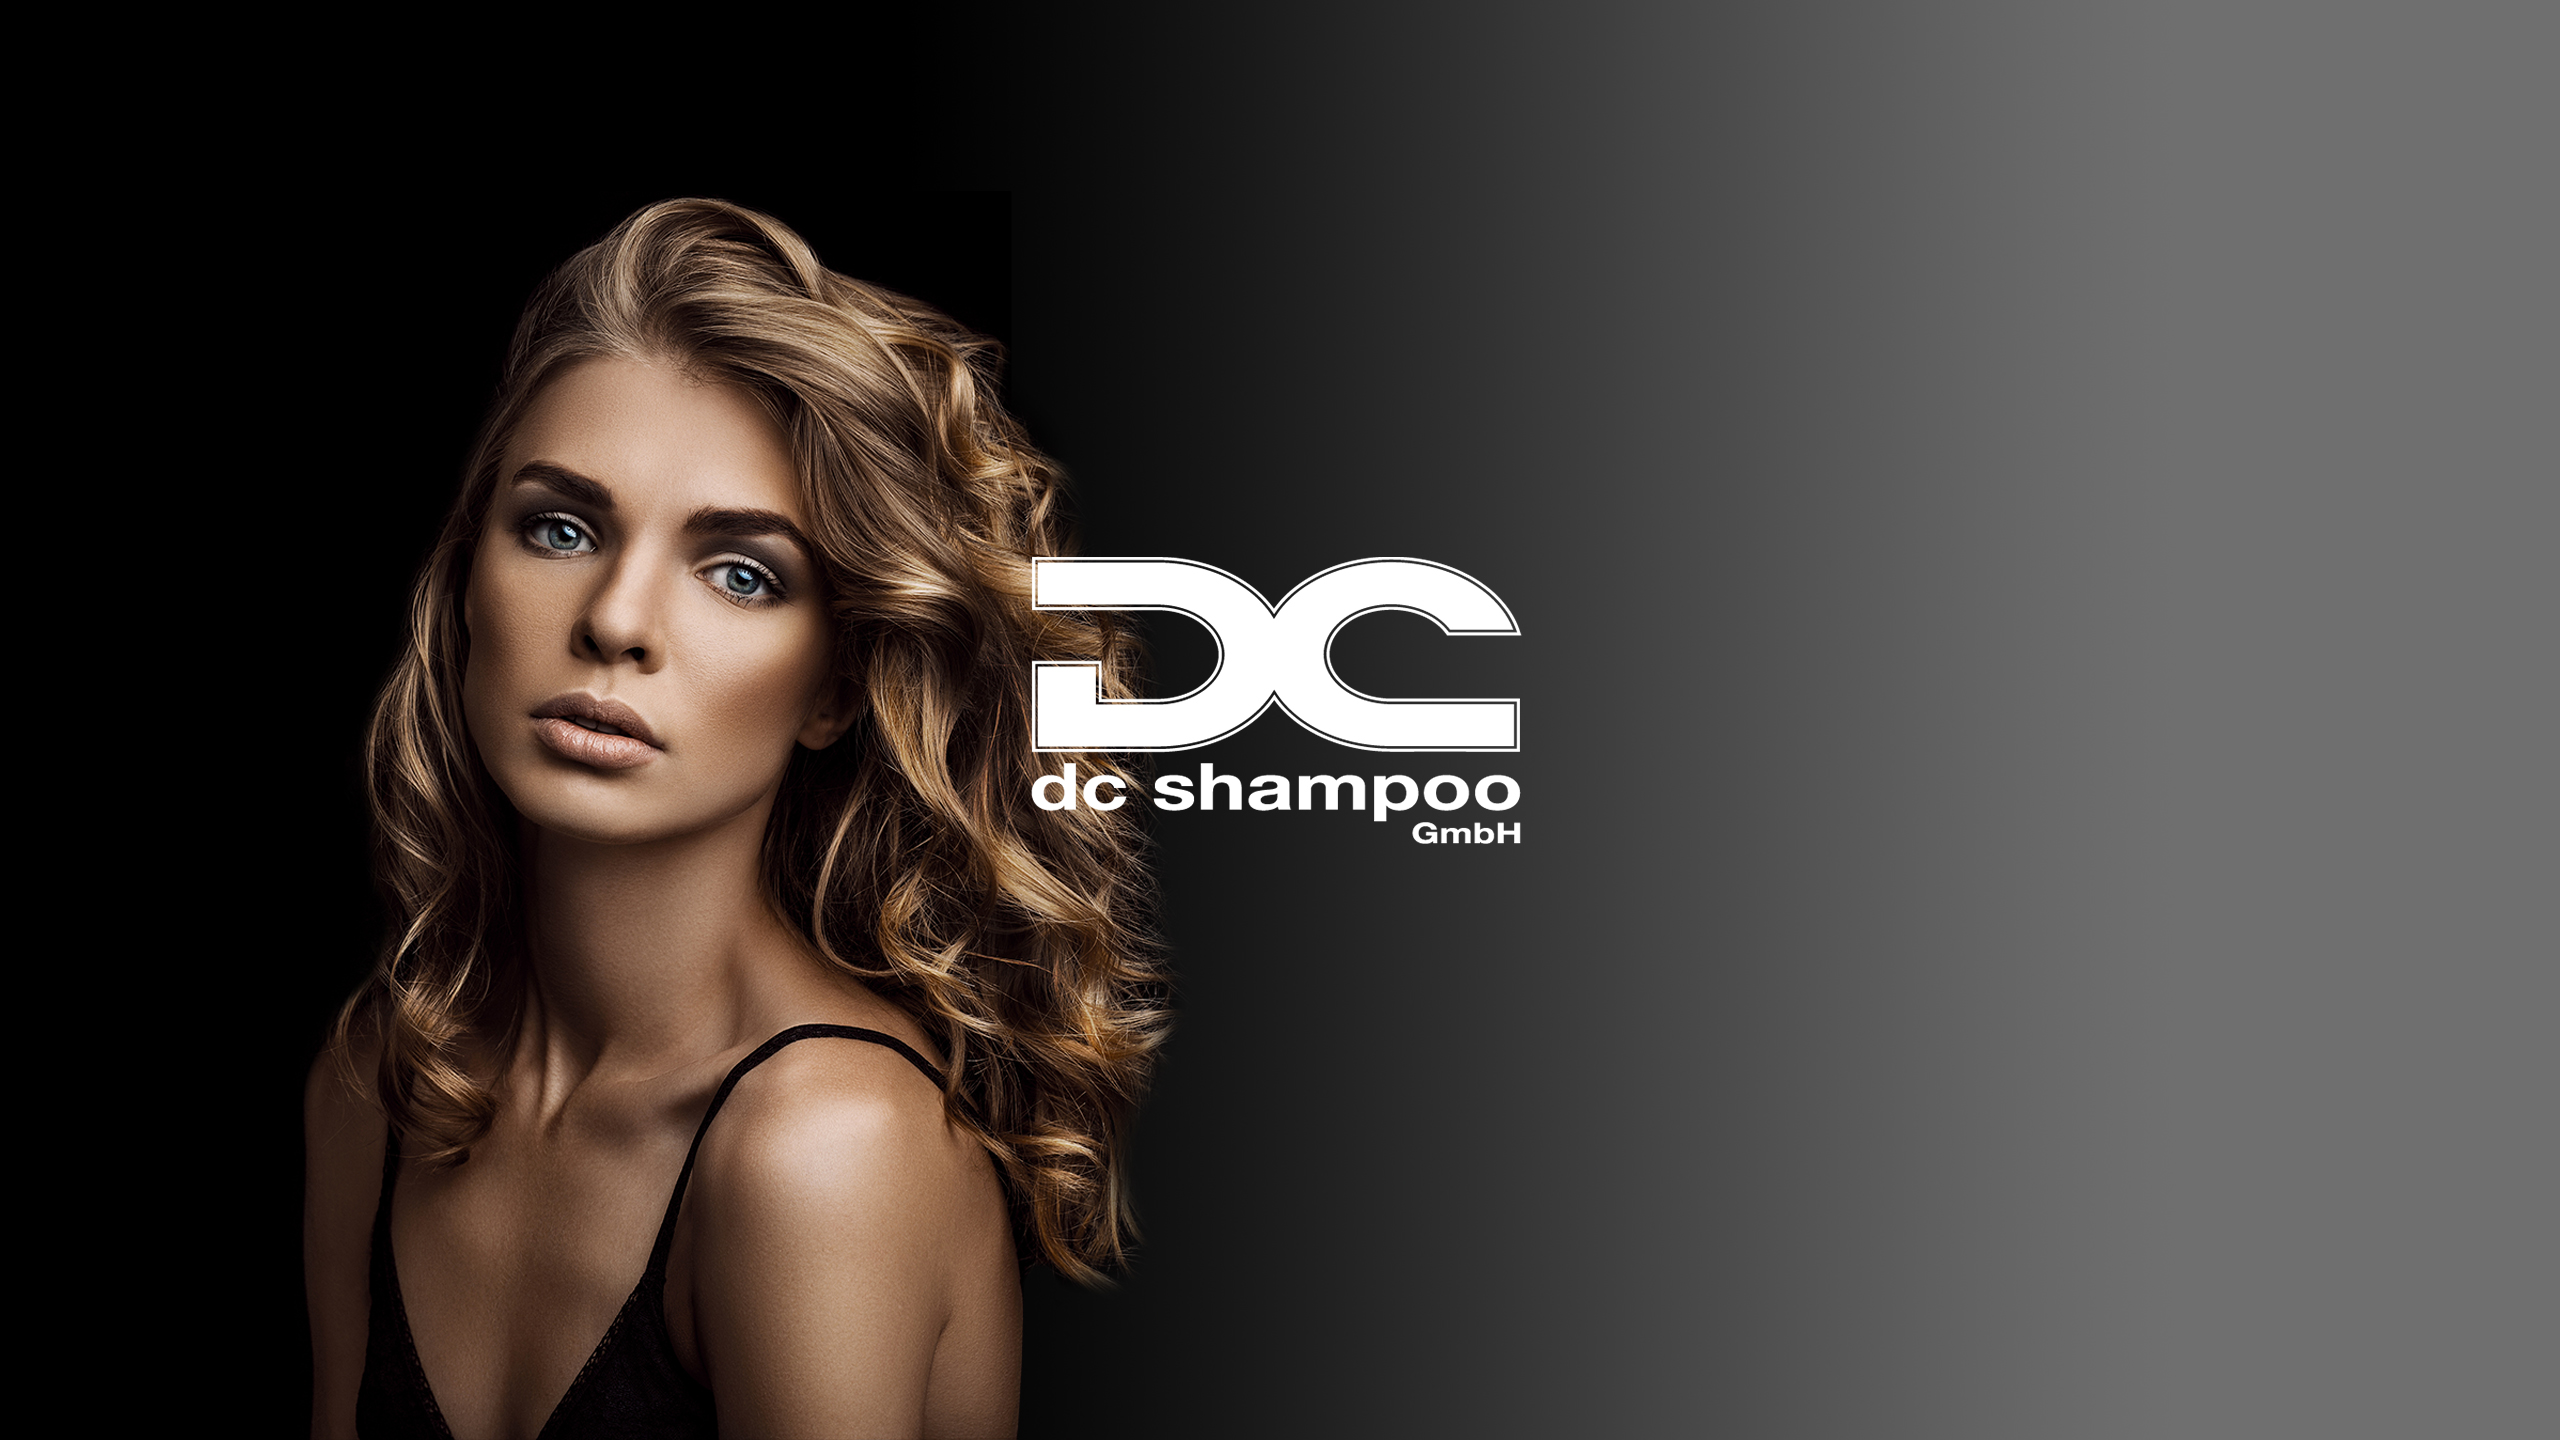 (c) Dc-shampoo.de